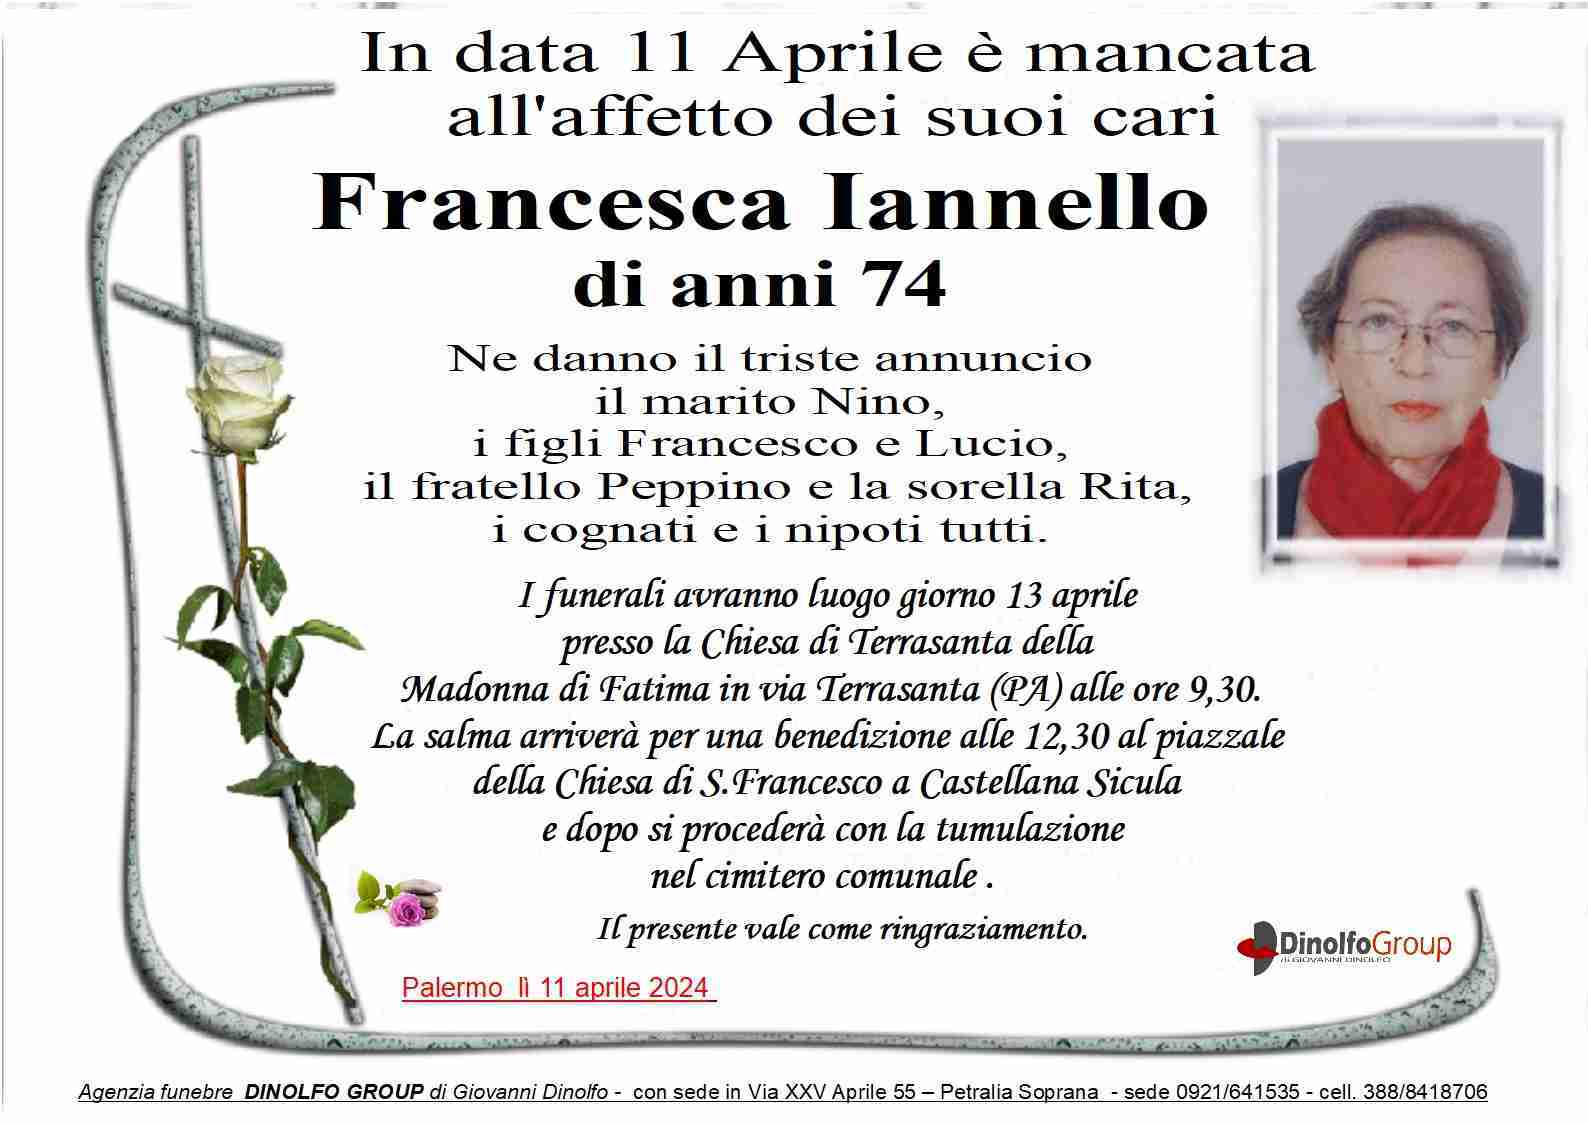 Francesca Iannello